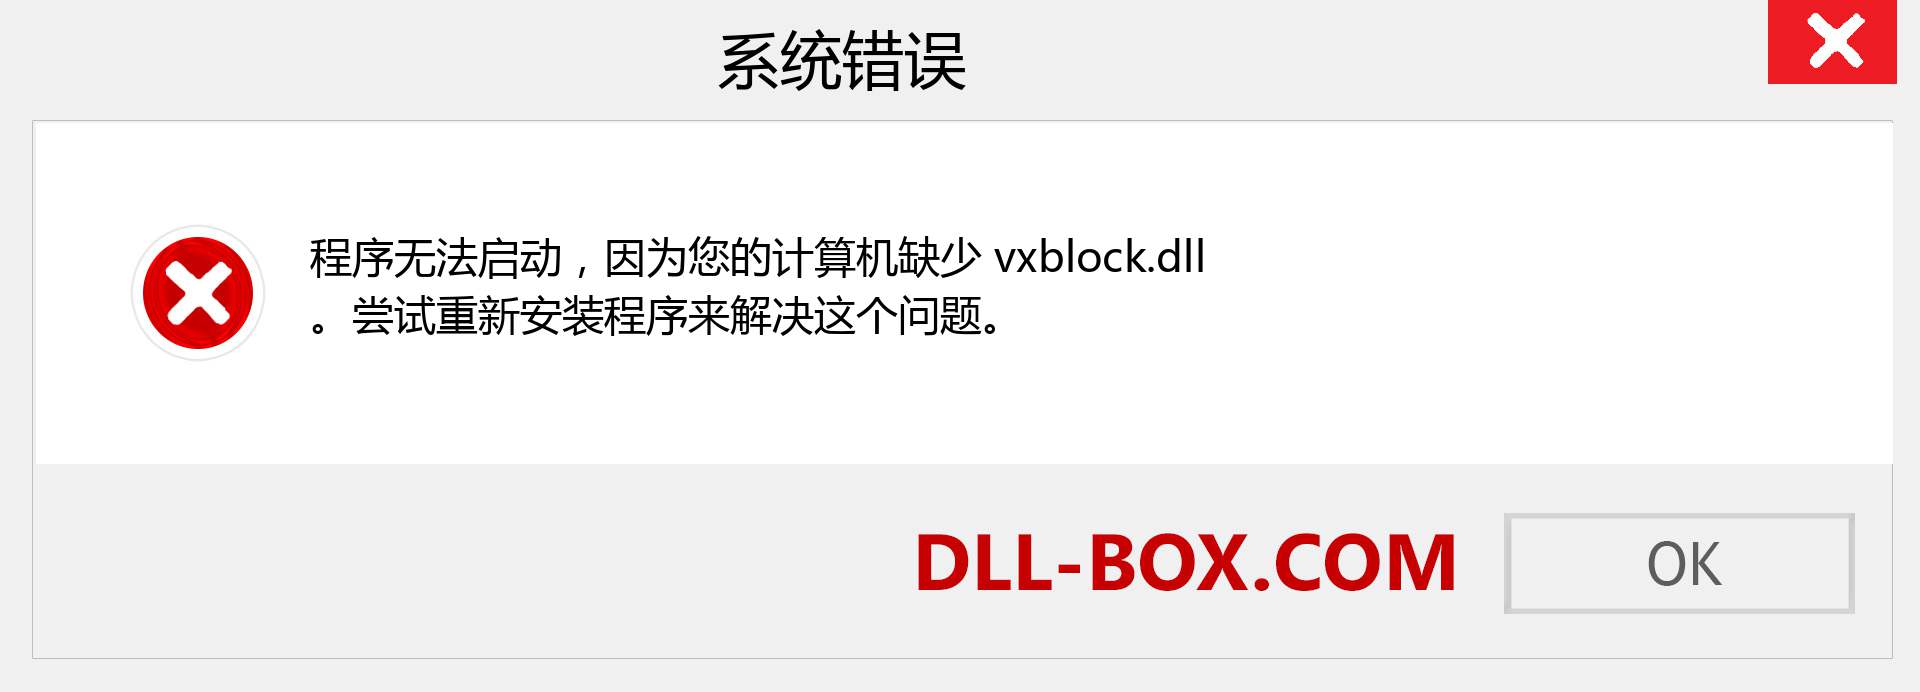 vxblock.dll 文件丢失？。 适用于 Windows 7、8、10 的下载 - 修复 Windows、照片、图像上的 vxblock dll 丢失错误